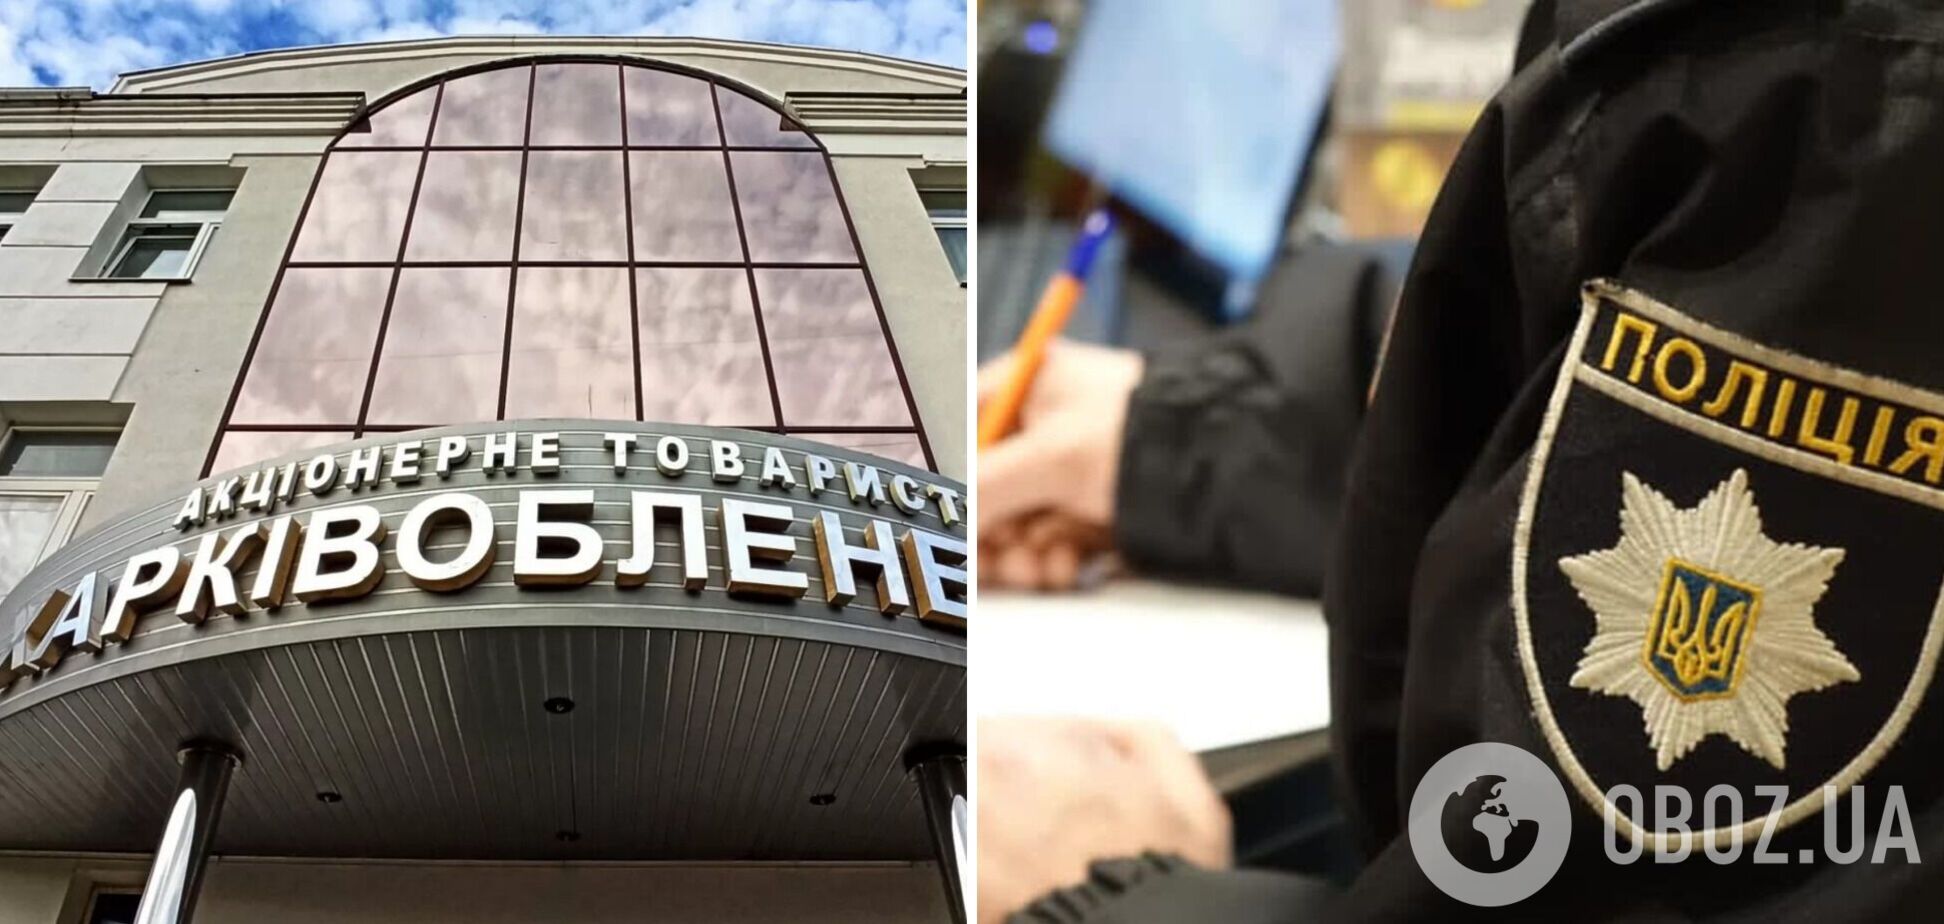 Поліція зареєструвала справу за фактами зловживань на тендерах 'Харківобленерго' на 111,6 млн гривень